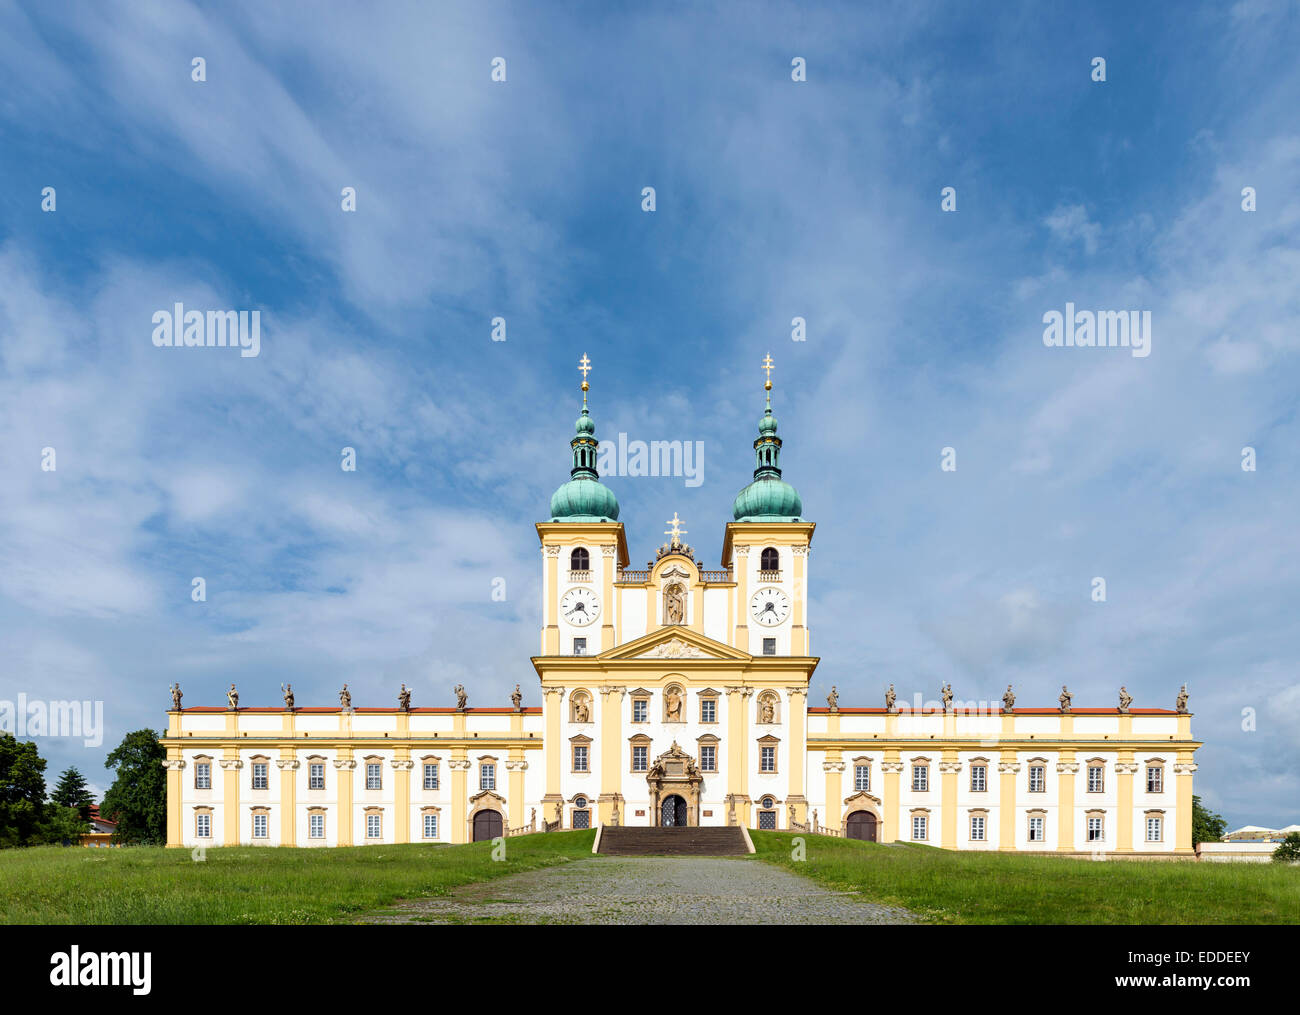 Premonstrate monasterio con la Basílica de la Anunciación, Svatý Kopecek o monte santo, Olomouc, República Checa Foto de stock